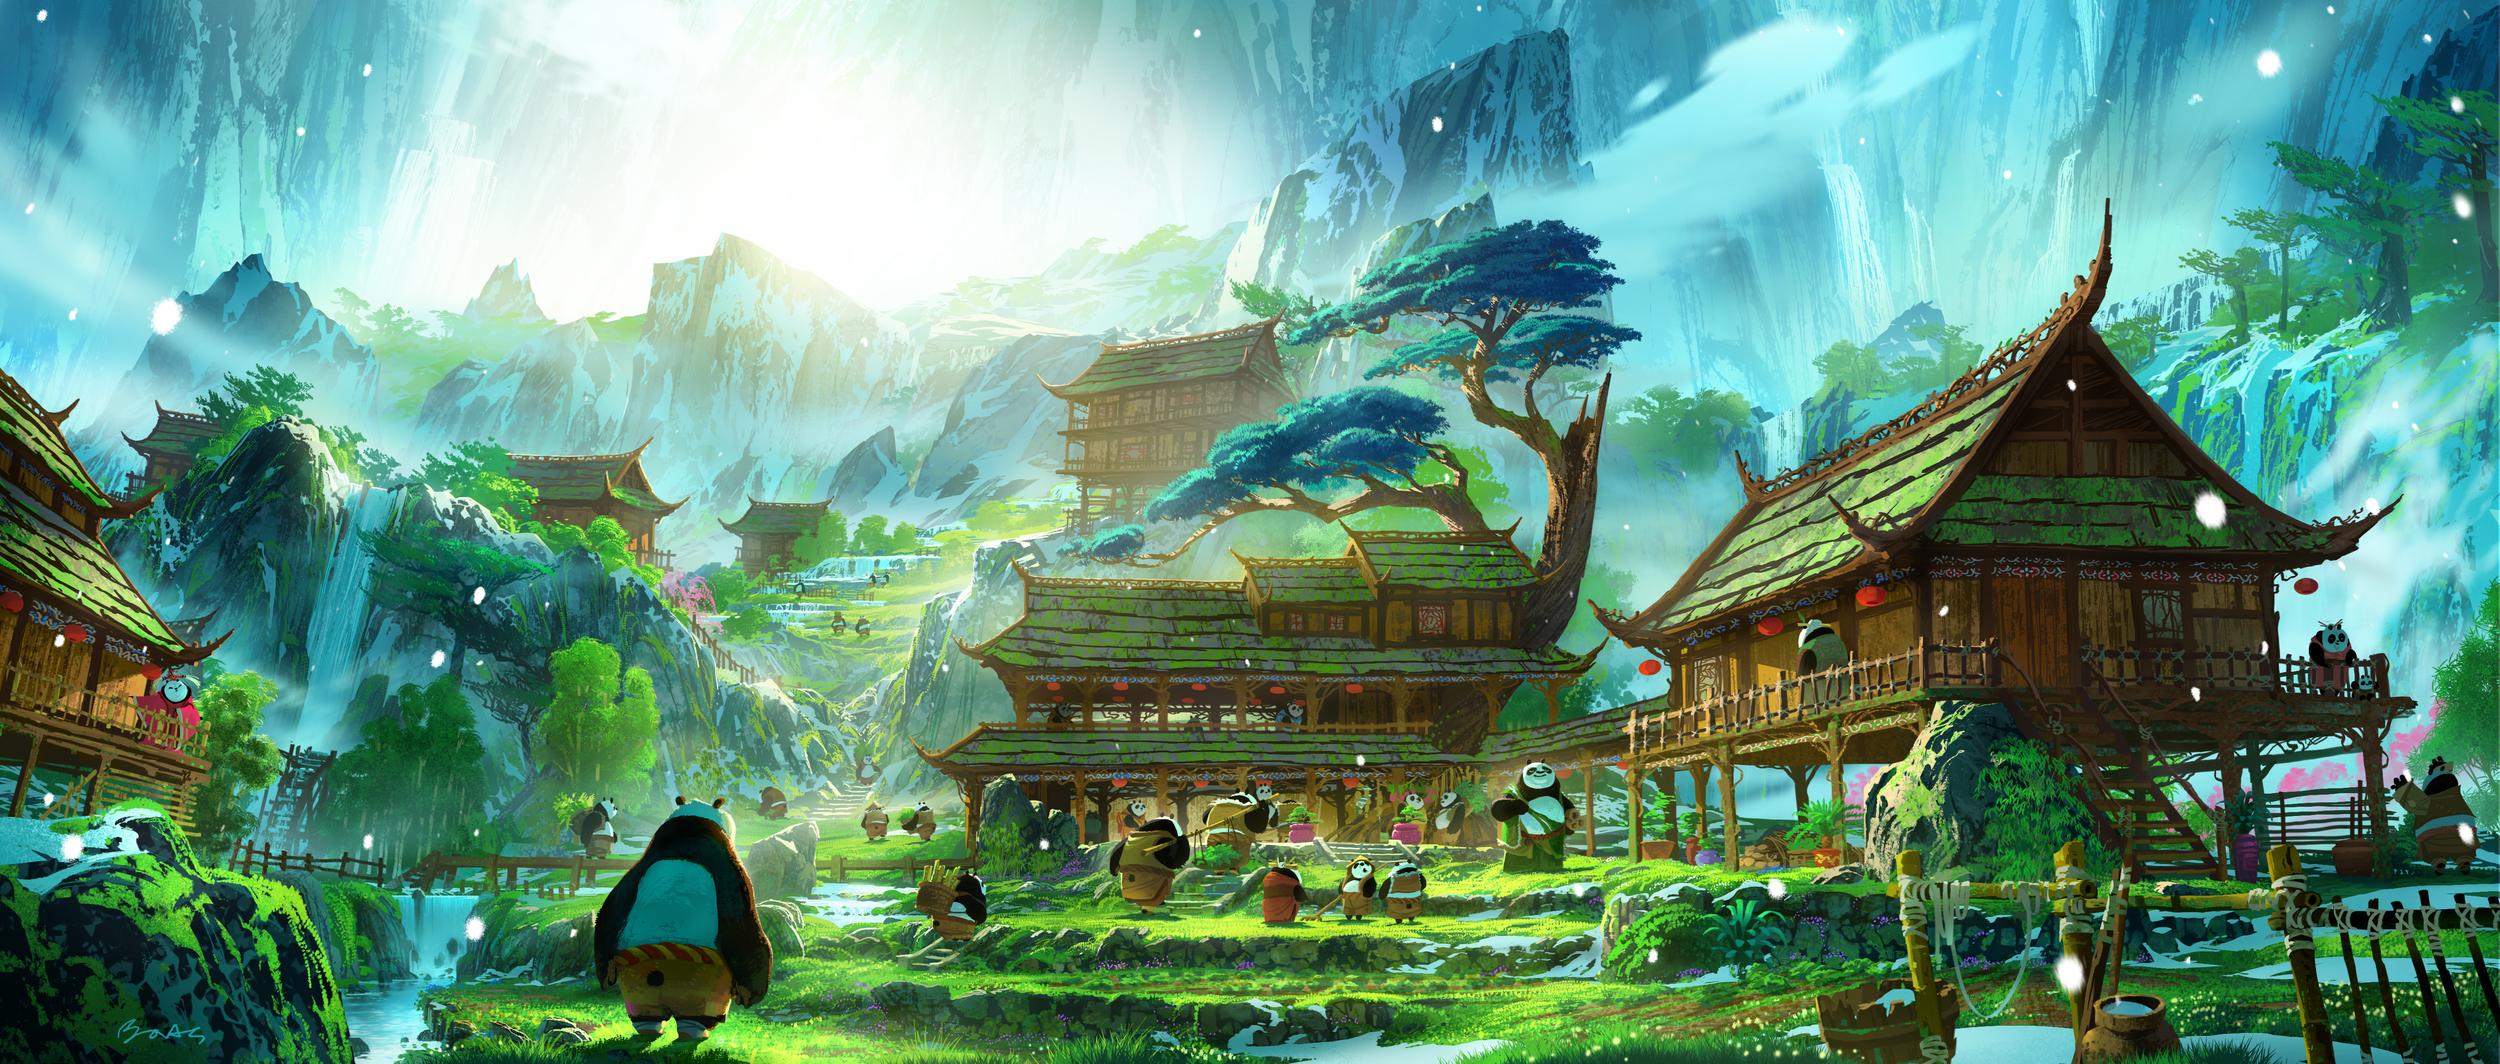  Kung Fu Panda 3, DWA Concept painting - Panda Village    